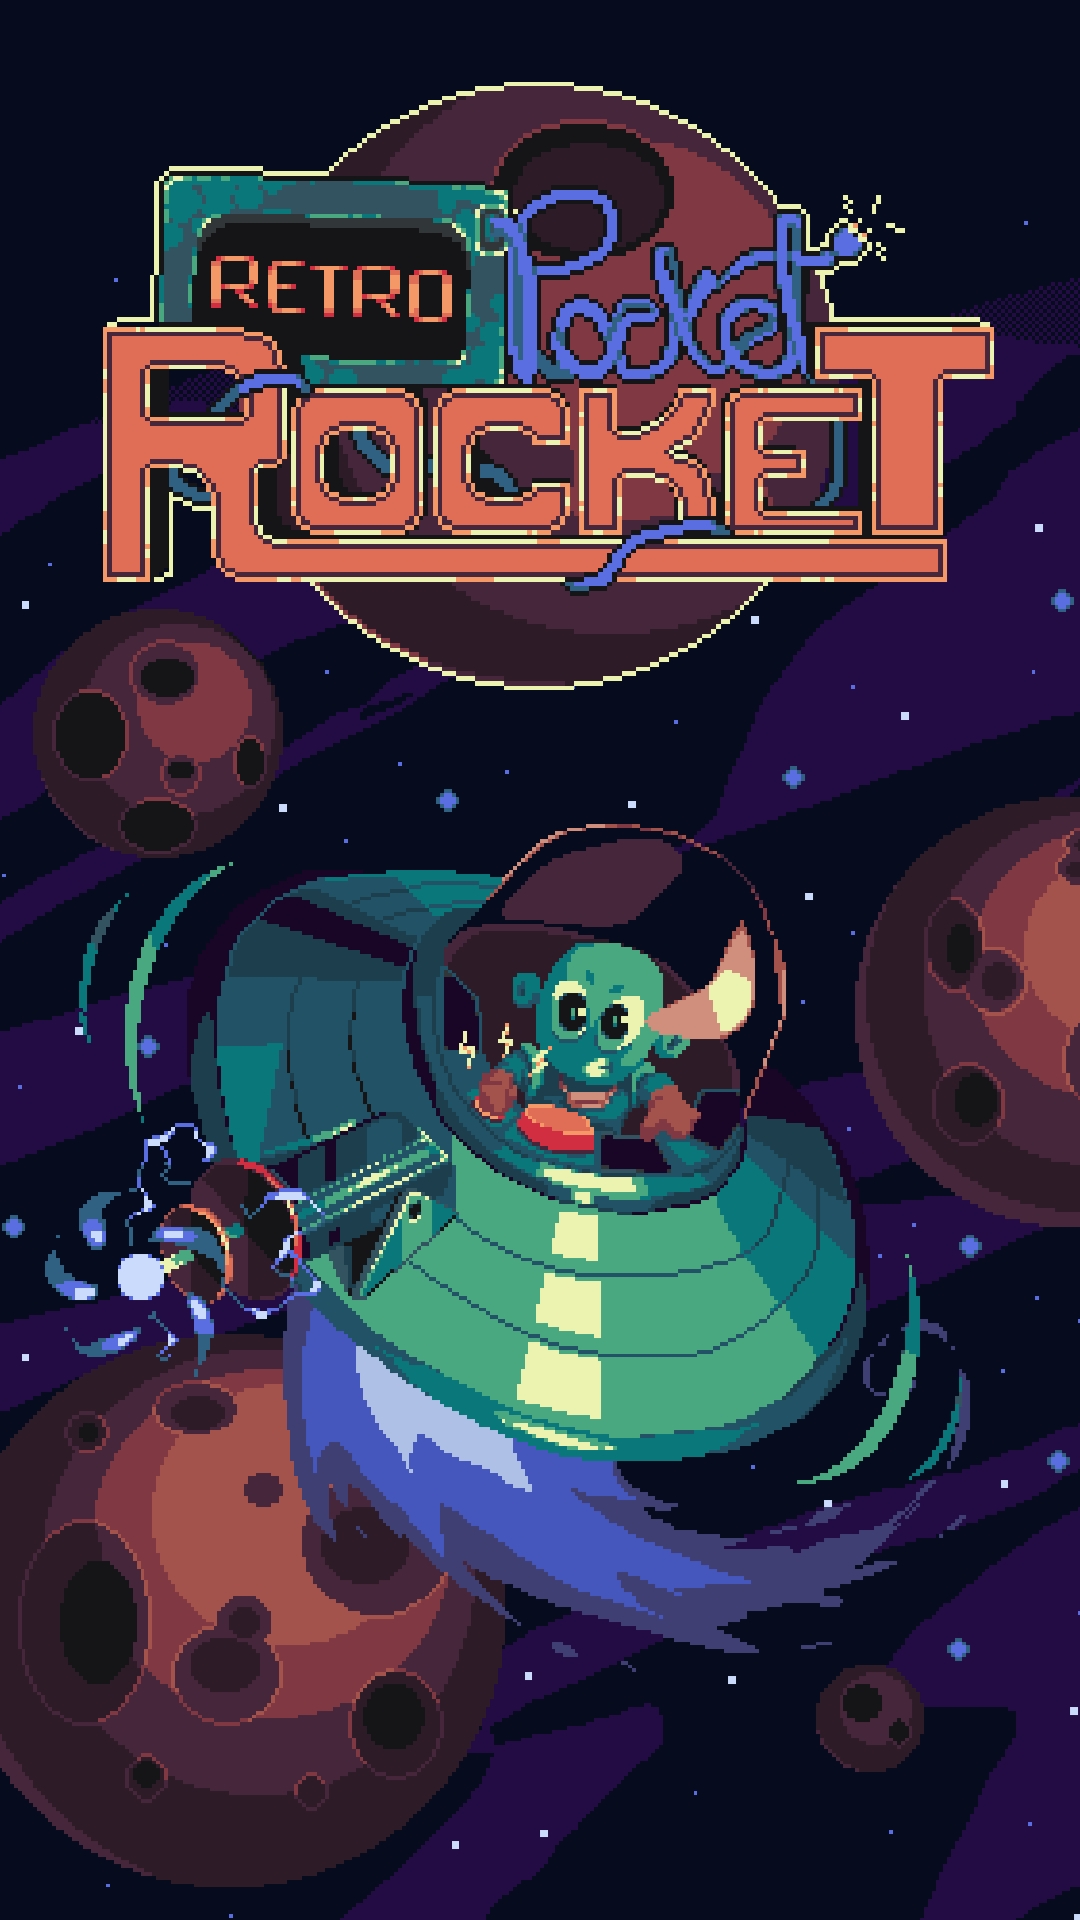 Télécharger Retro Pocket Rocket pour Android gratuit.